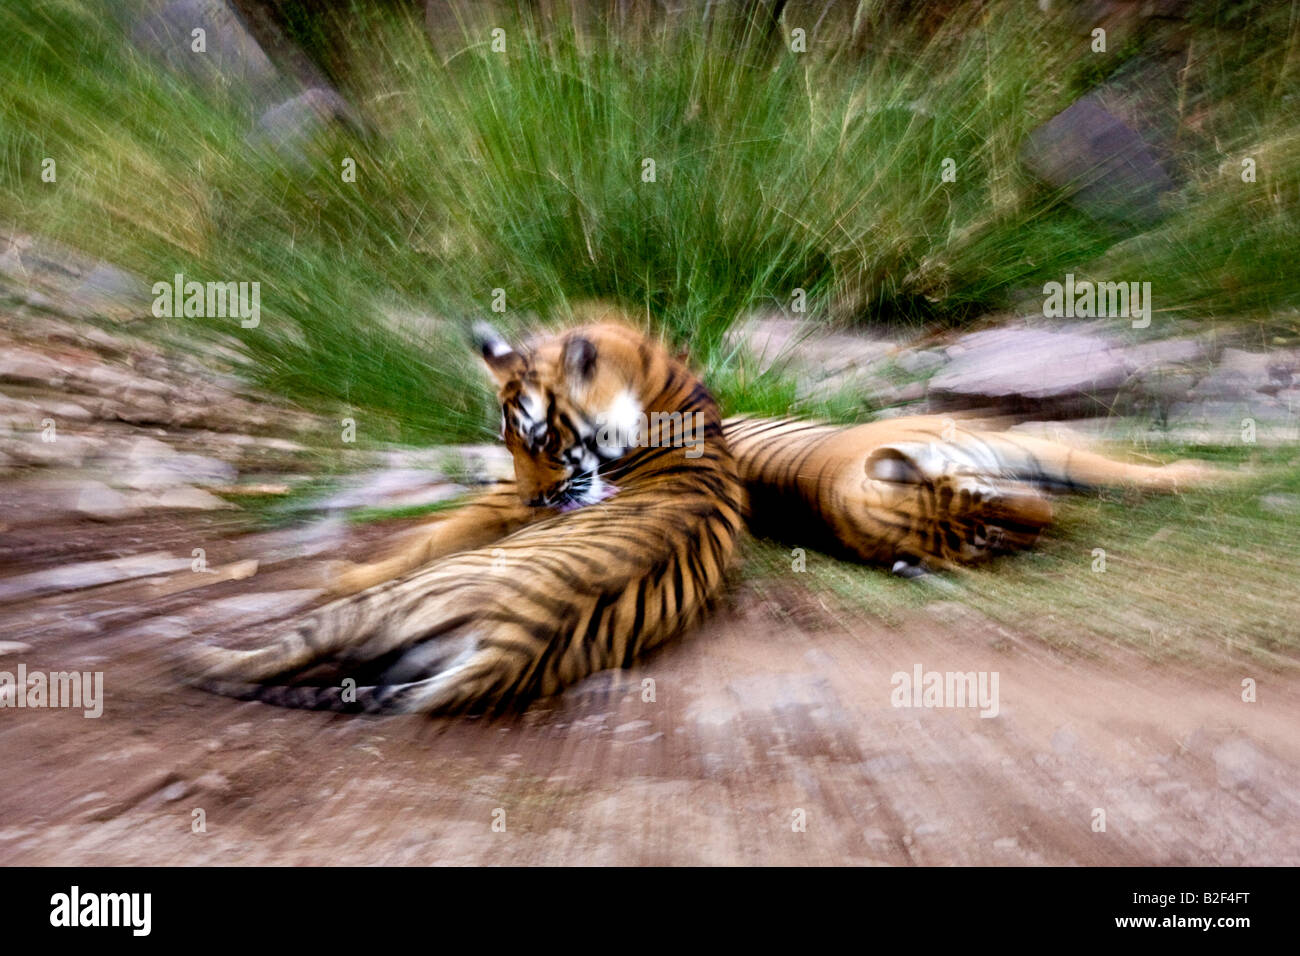 Verkleinern oder vergrößern Sie platzen zwei Tiger eine explosive Wirkung verleihen Stockfoto